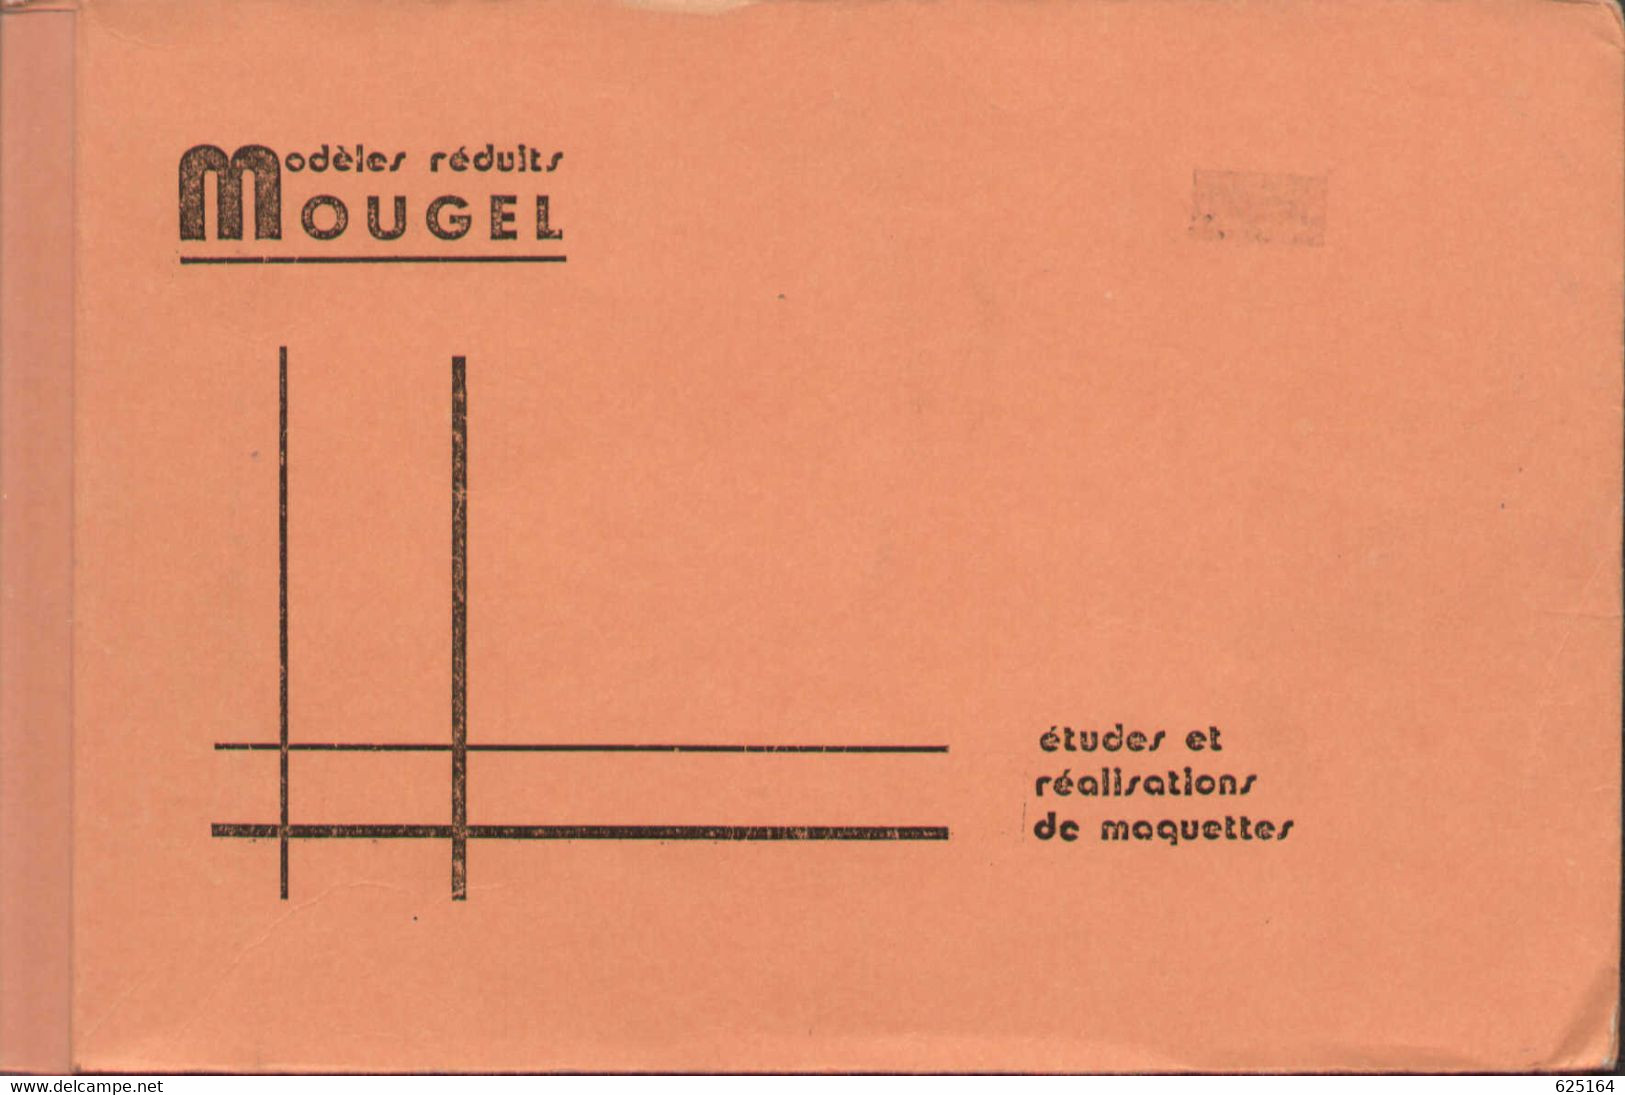 Catalogue MOUGEL 1990 Modçles Reduits HO - HOm - HOe Échele  1/87 - French